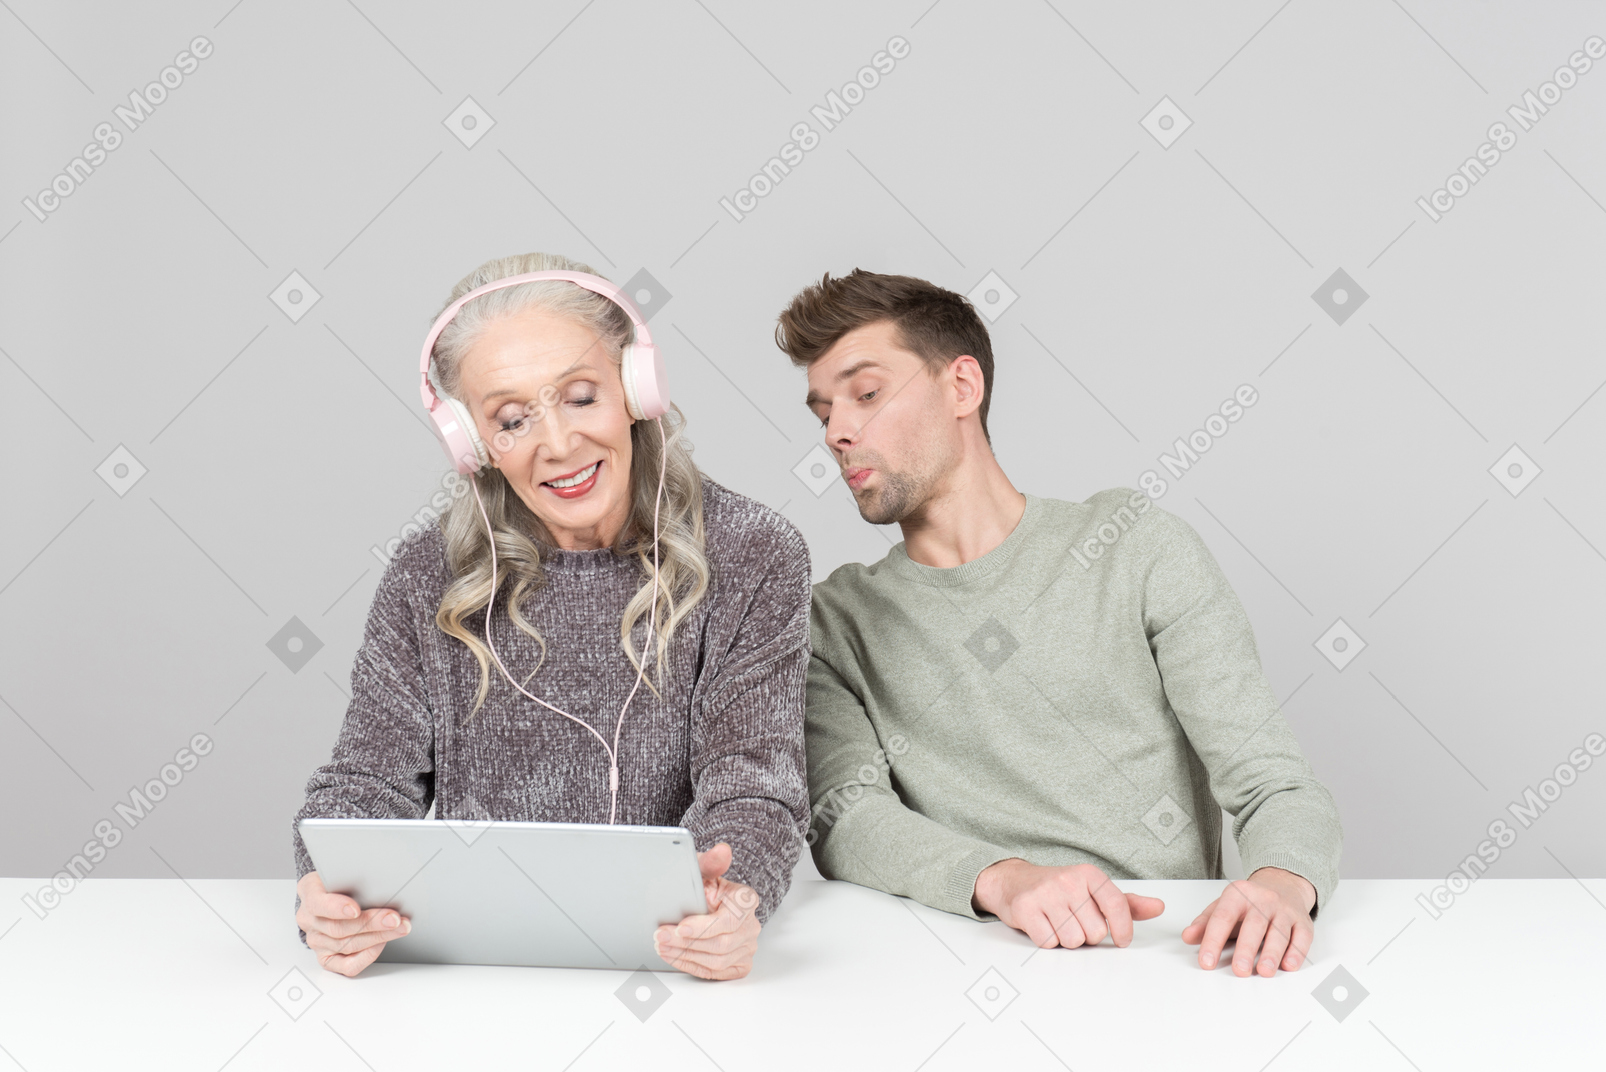 Mulher velha em fones de ouvido e cara jovem assistindo algo em um tablet digital